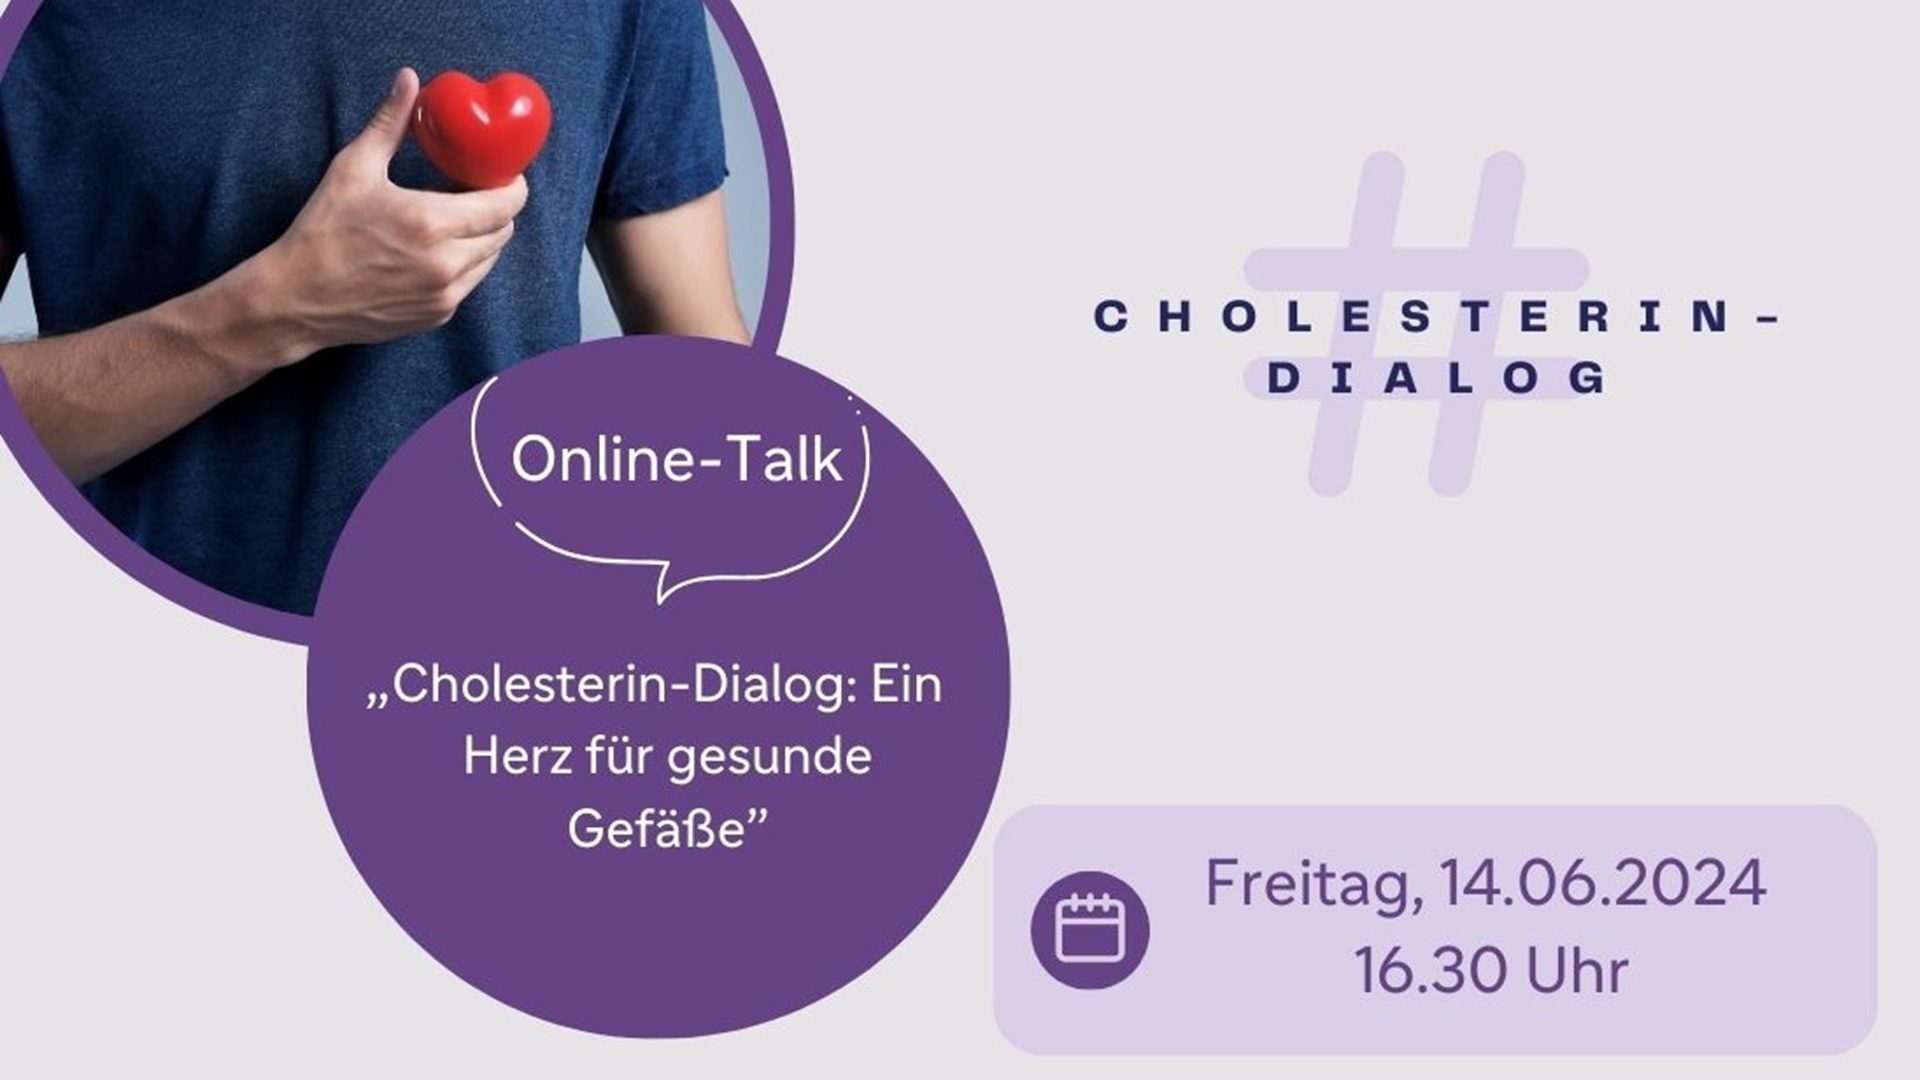 Cholesterin-Dialog live am 14. Juni: Ein Herz für gesunde Gefäße